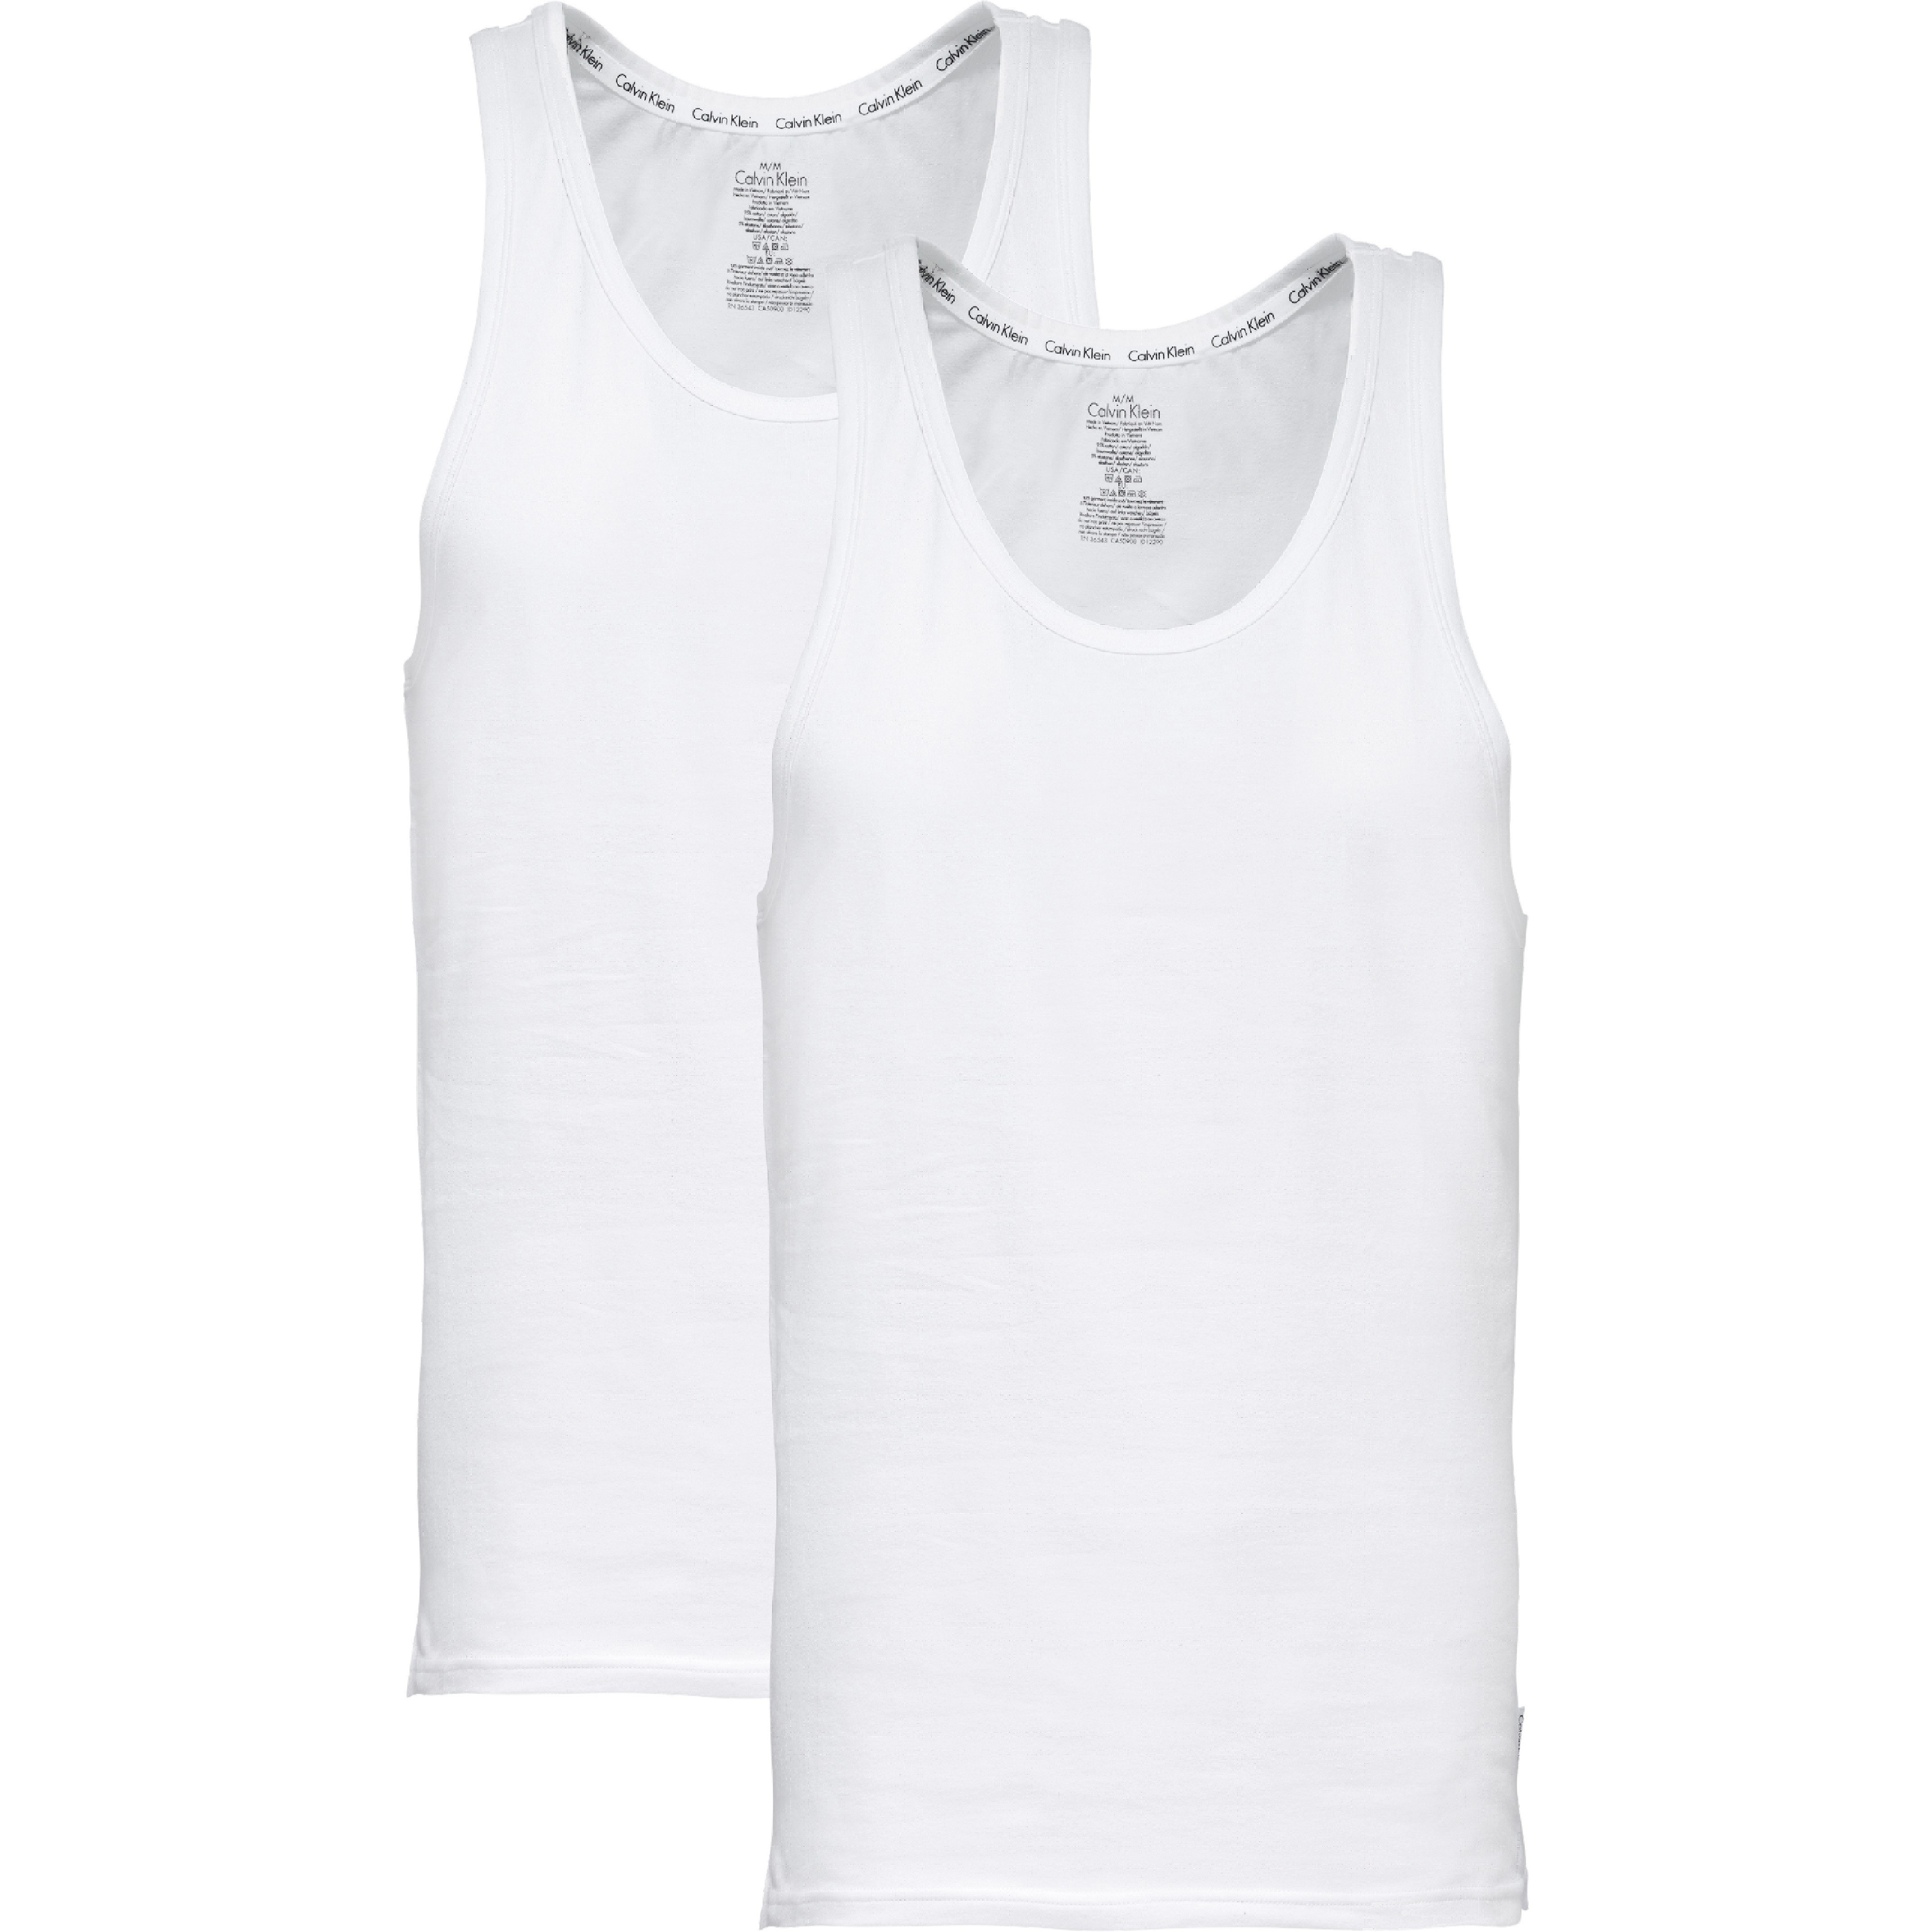 Nuevo Hombre Liso Blanco Chaleco 100/% Algodón Camiseta de Tirantes S-XXL GB Lote